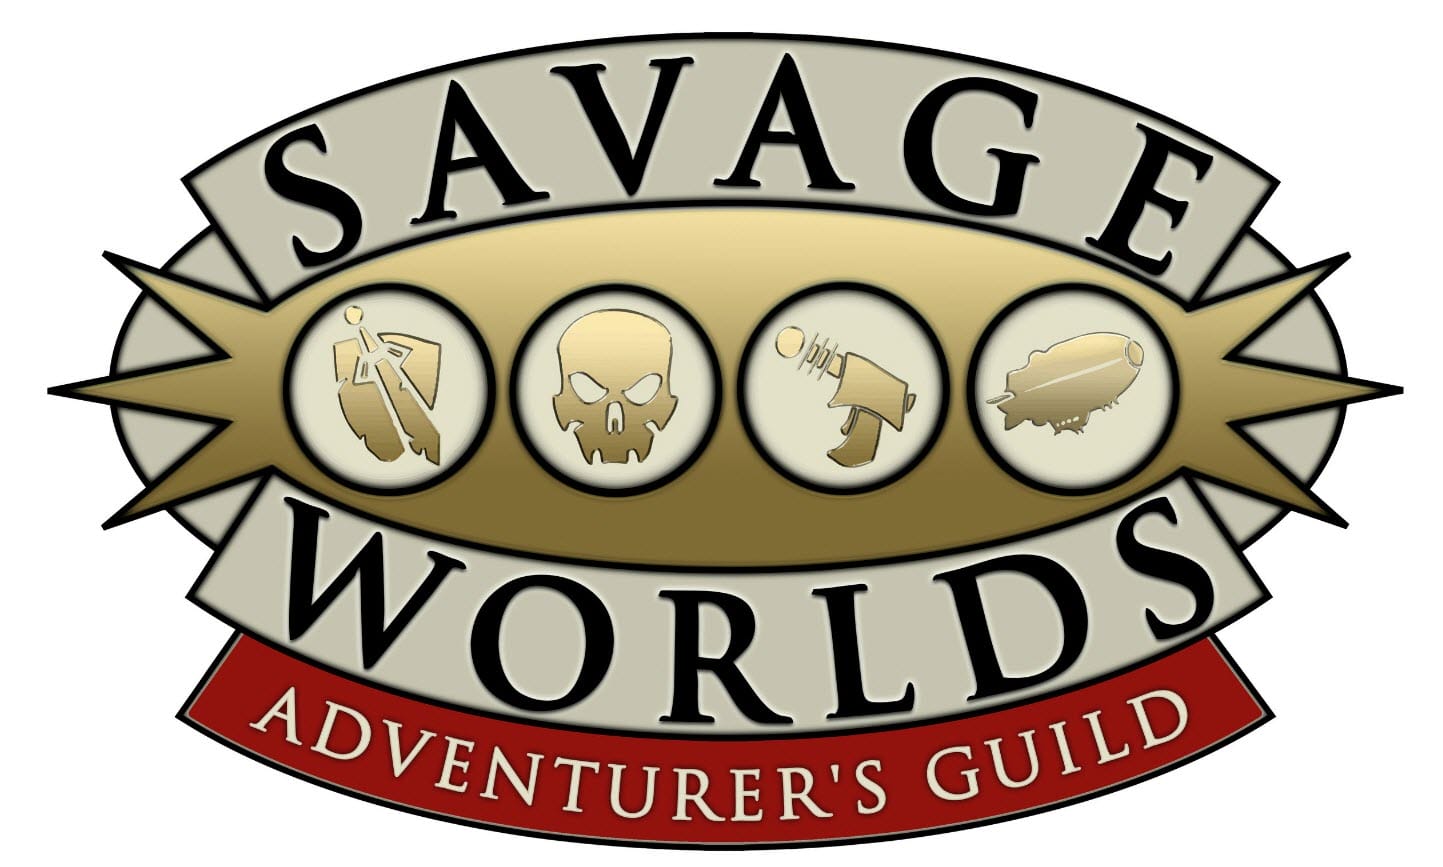 Savage Worlds Adventurer's Guild